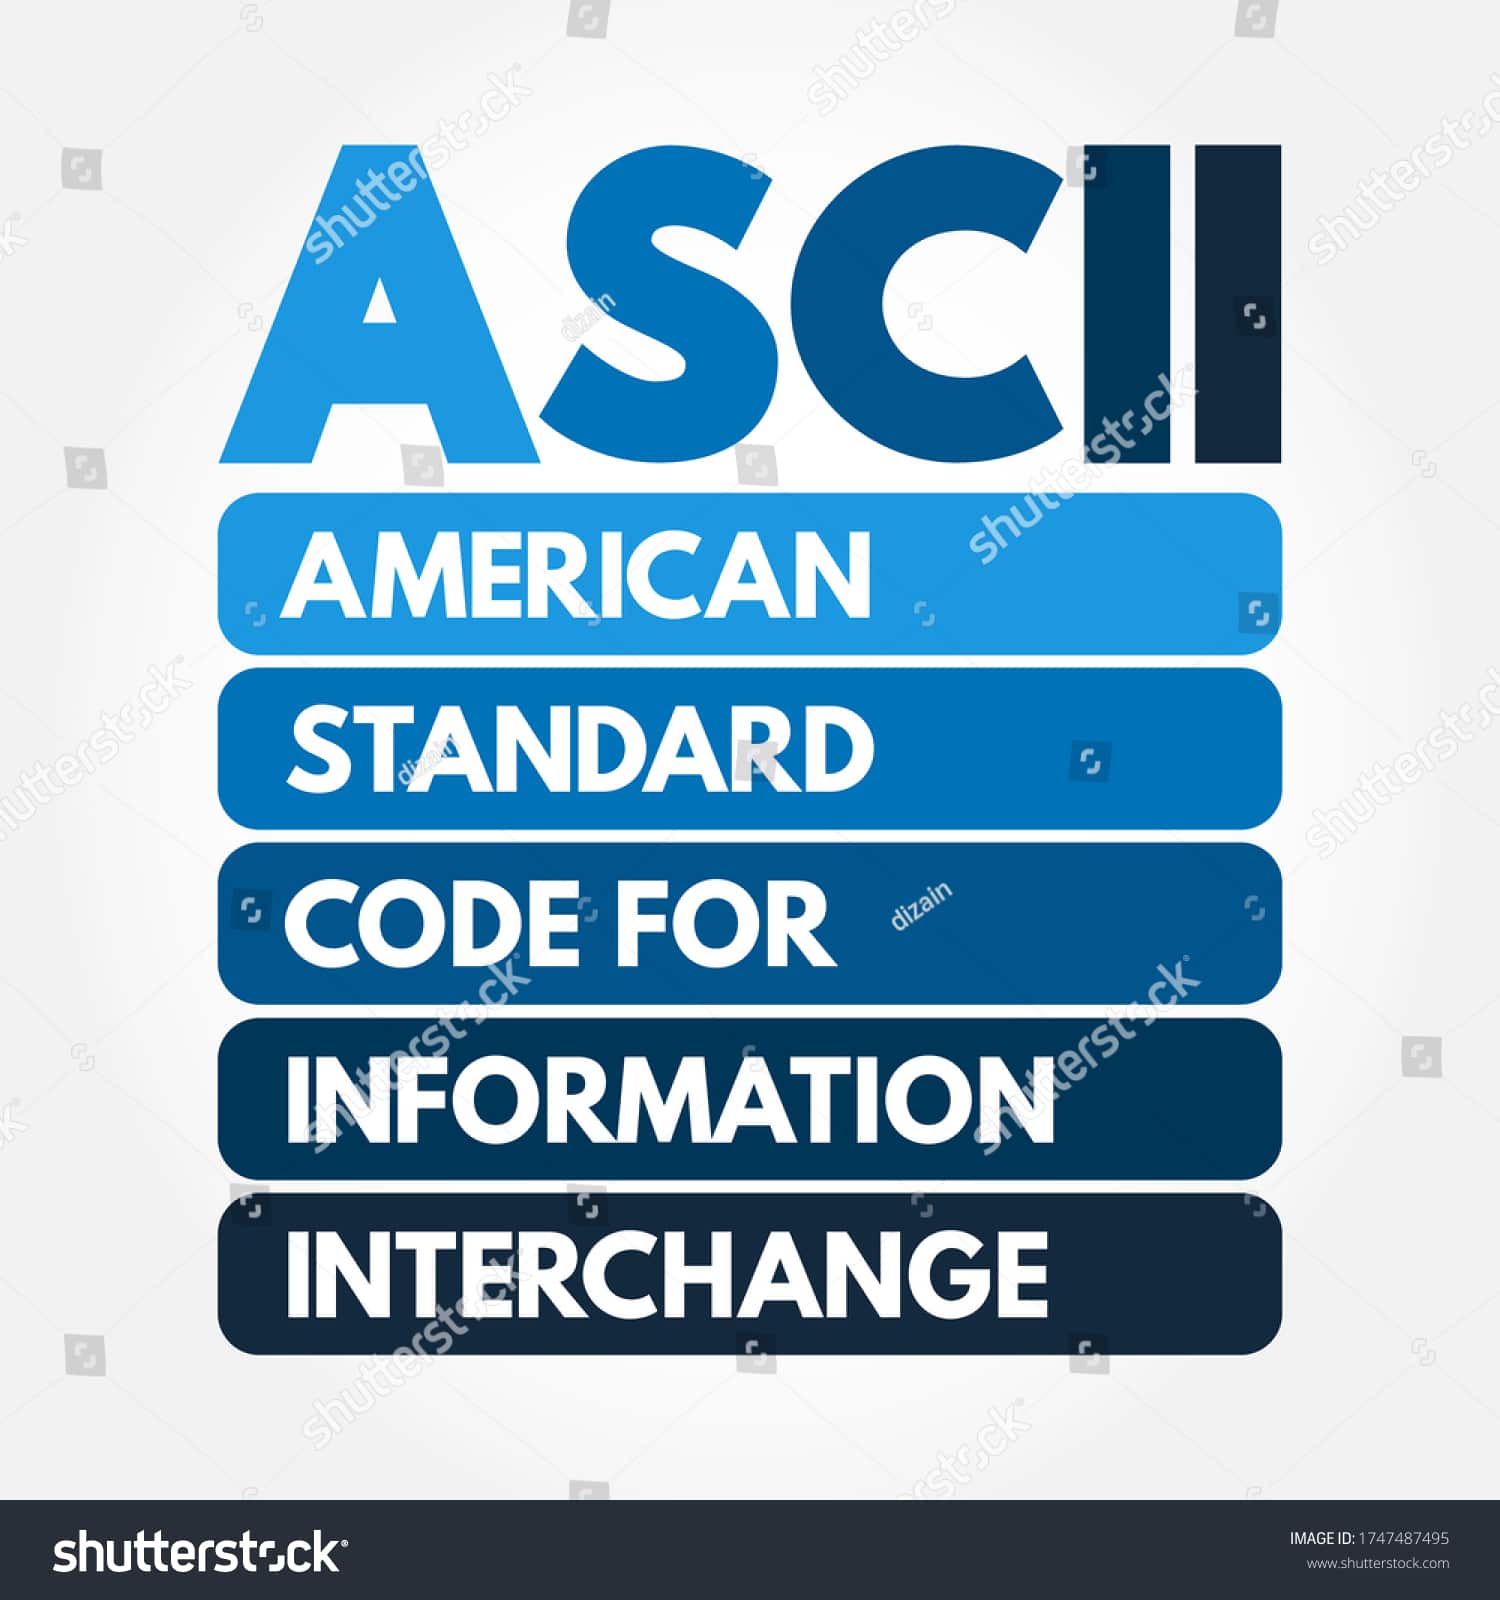 Американский стандартный код для обмена информацией (ASCII)